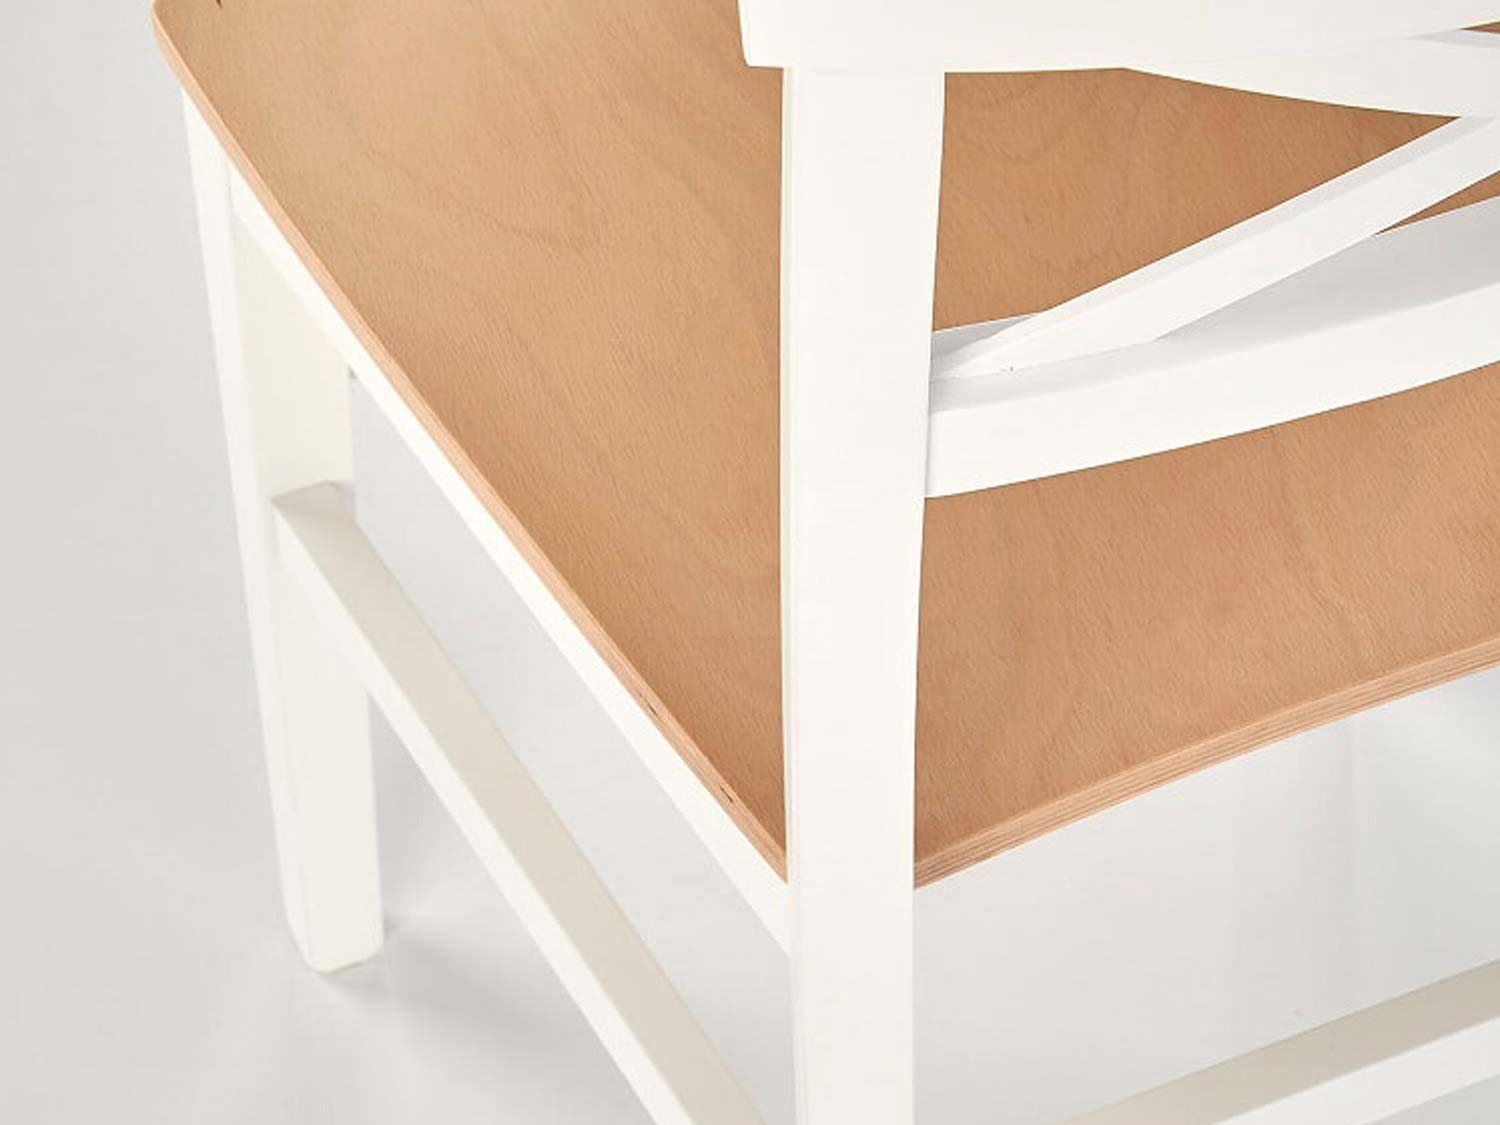 Białe drewniane krzesło do jadalni i kuchnii.